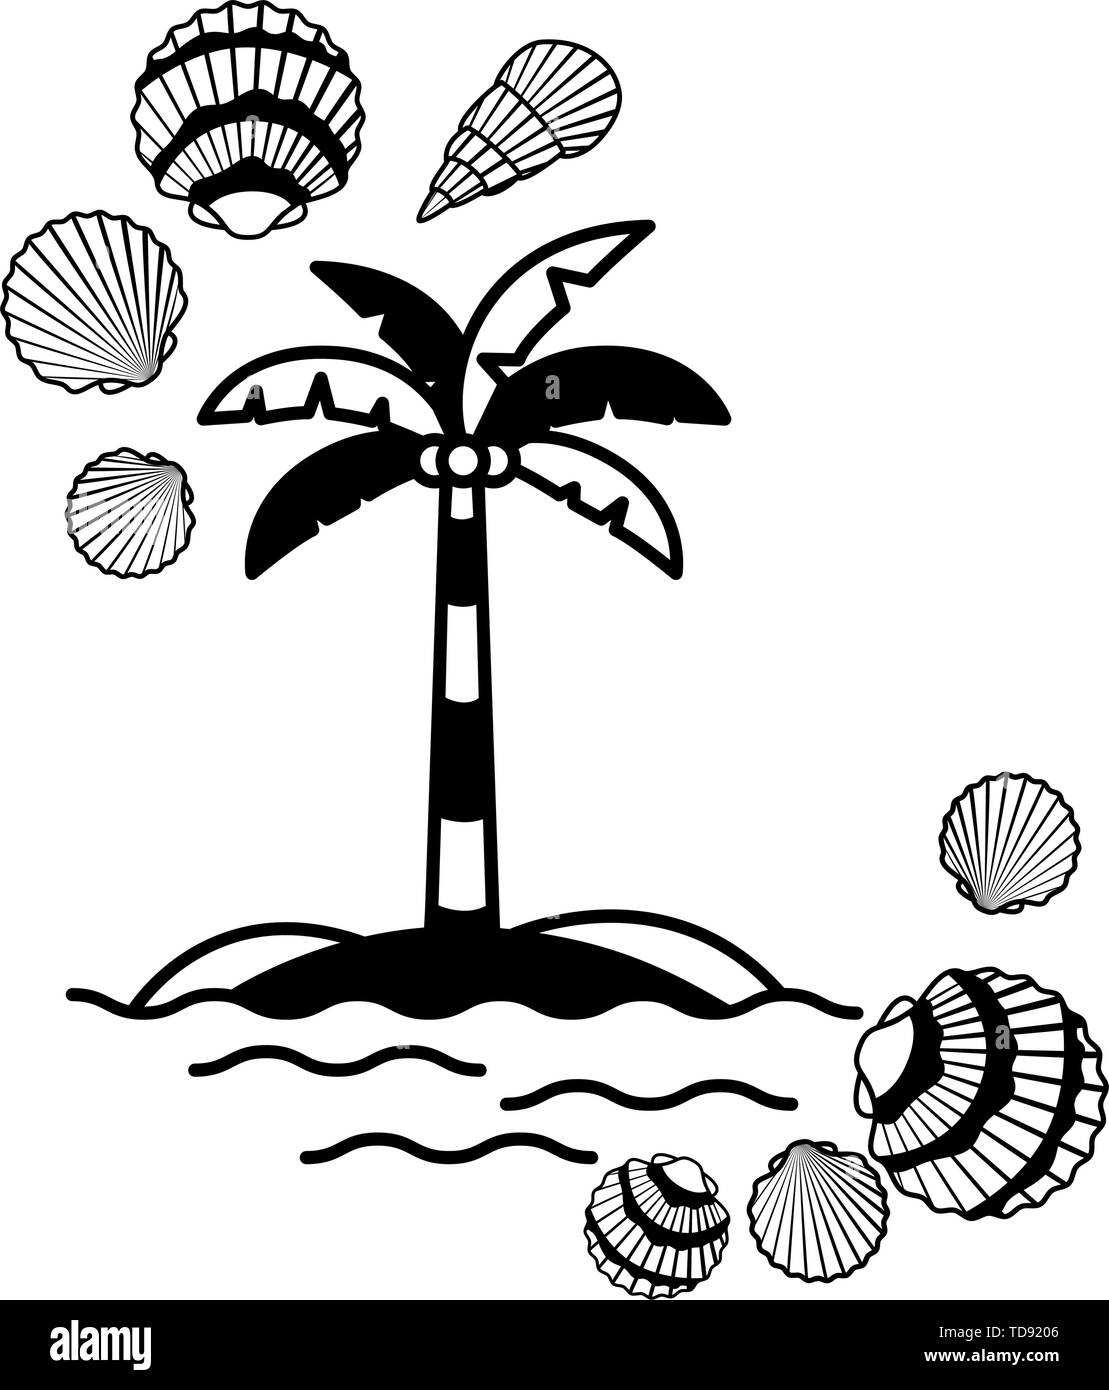 Albero di palma di cocco con in sfondo bianco Illustrazione Vettoriale